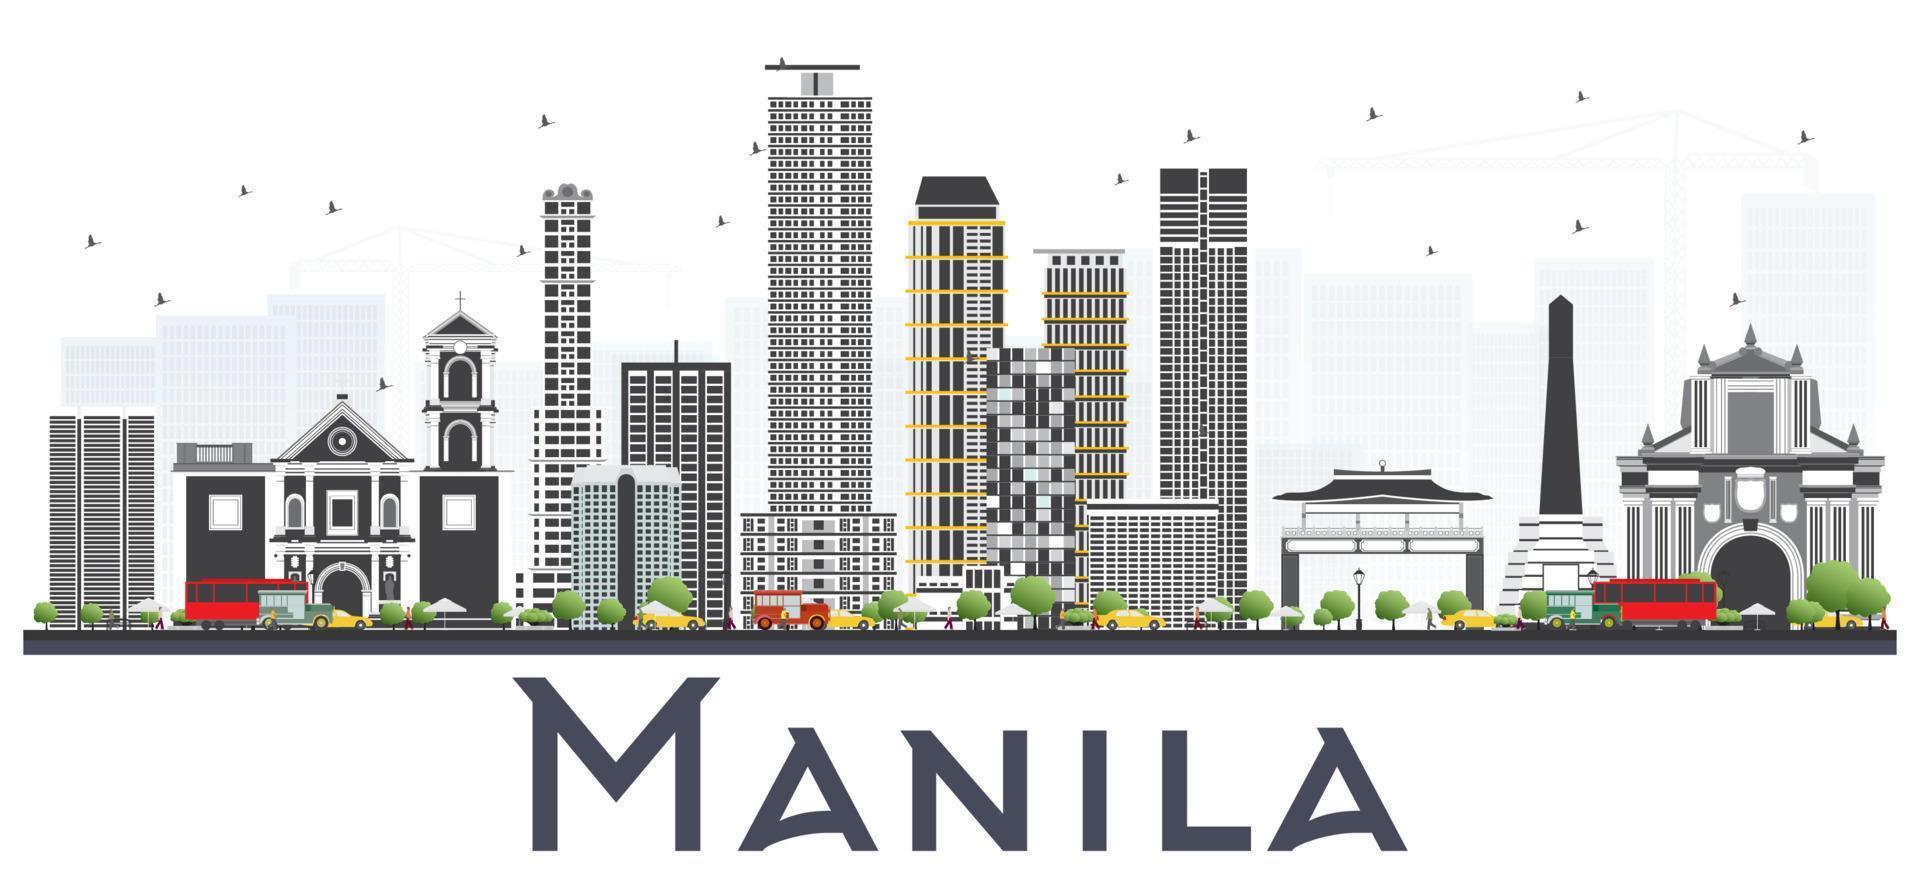 manila philippinen city skyline mit grauen gebäuden isoliert auf weißem hintergrund. vektor